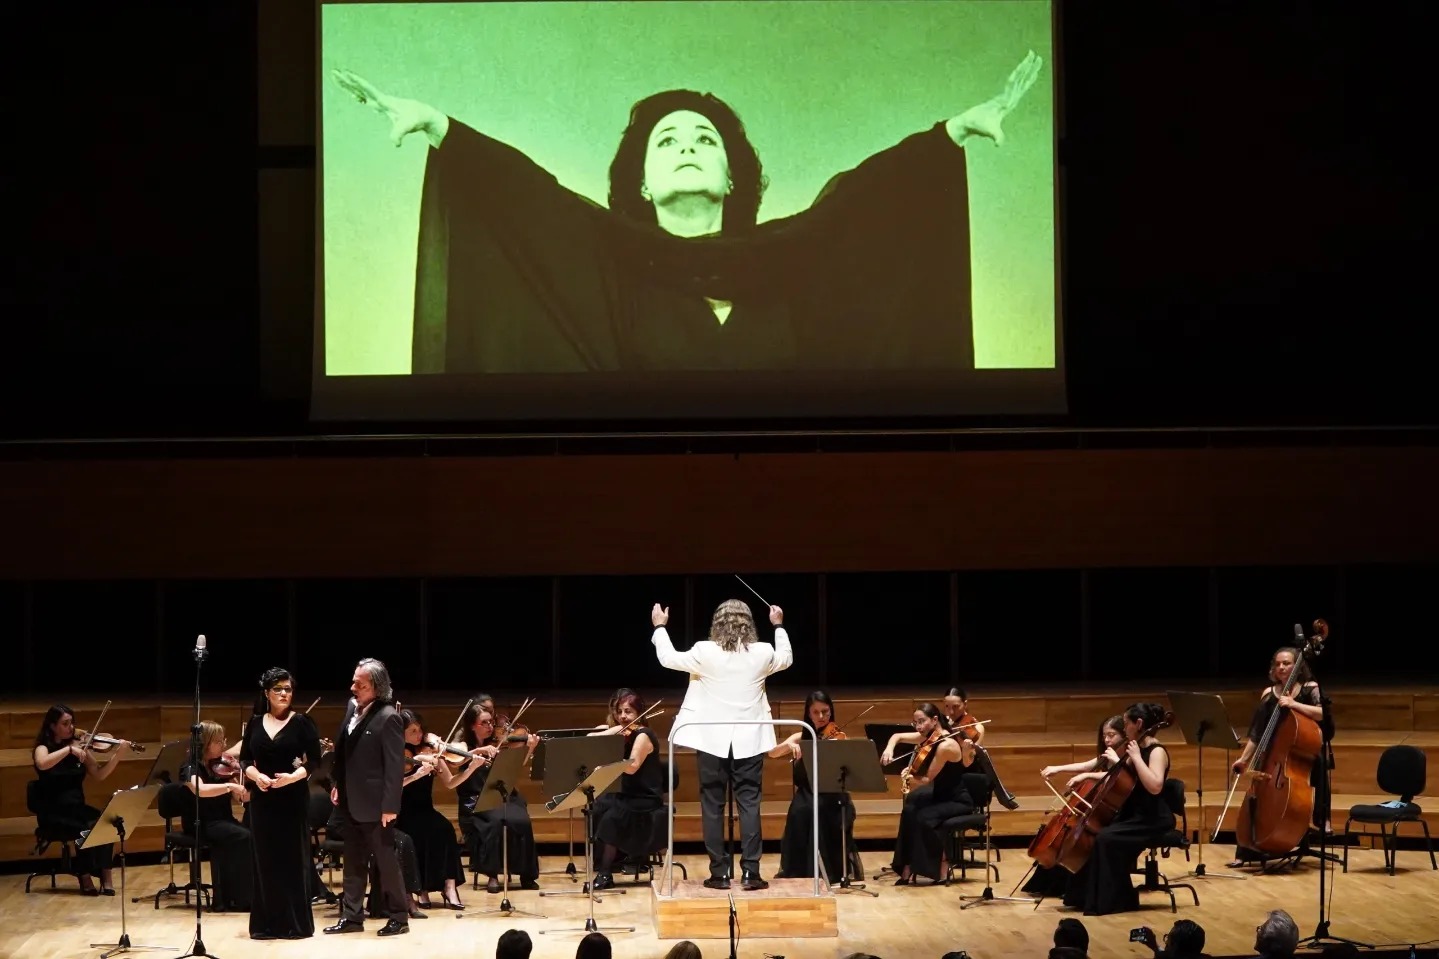 Opera dünyasının eşsiz sesi Leyla Gencer için unutulmaz bir anma konseri düzenlendi